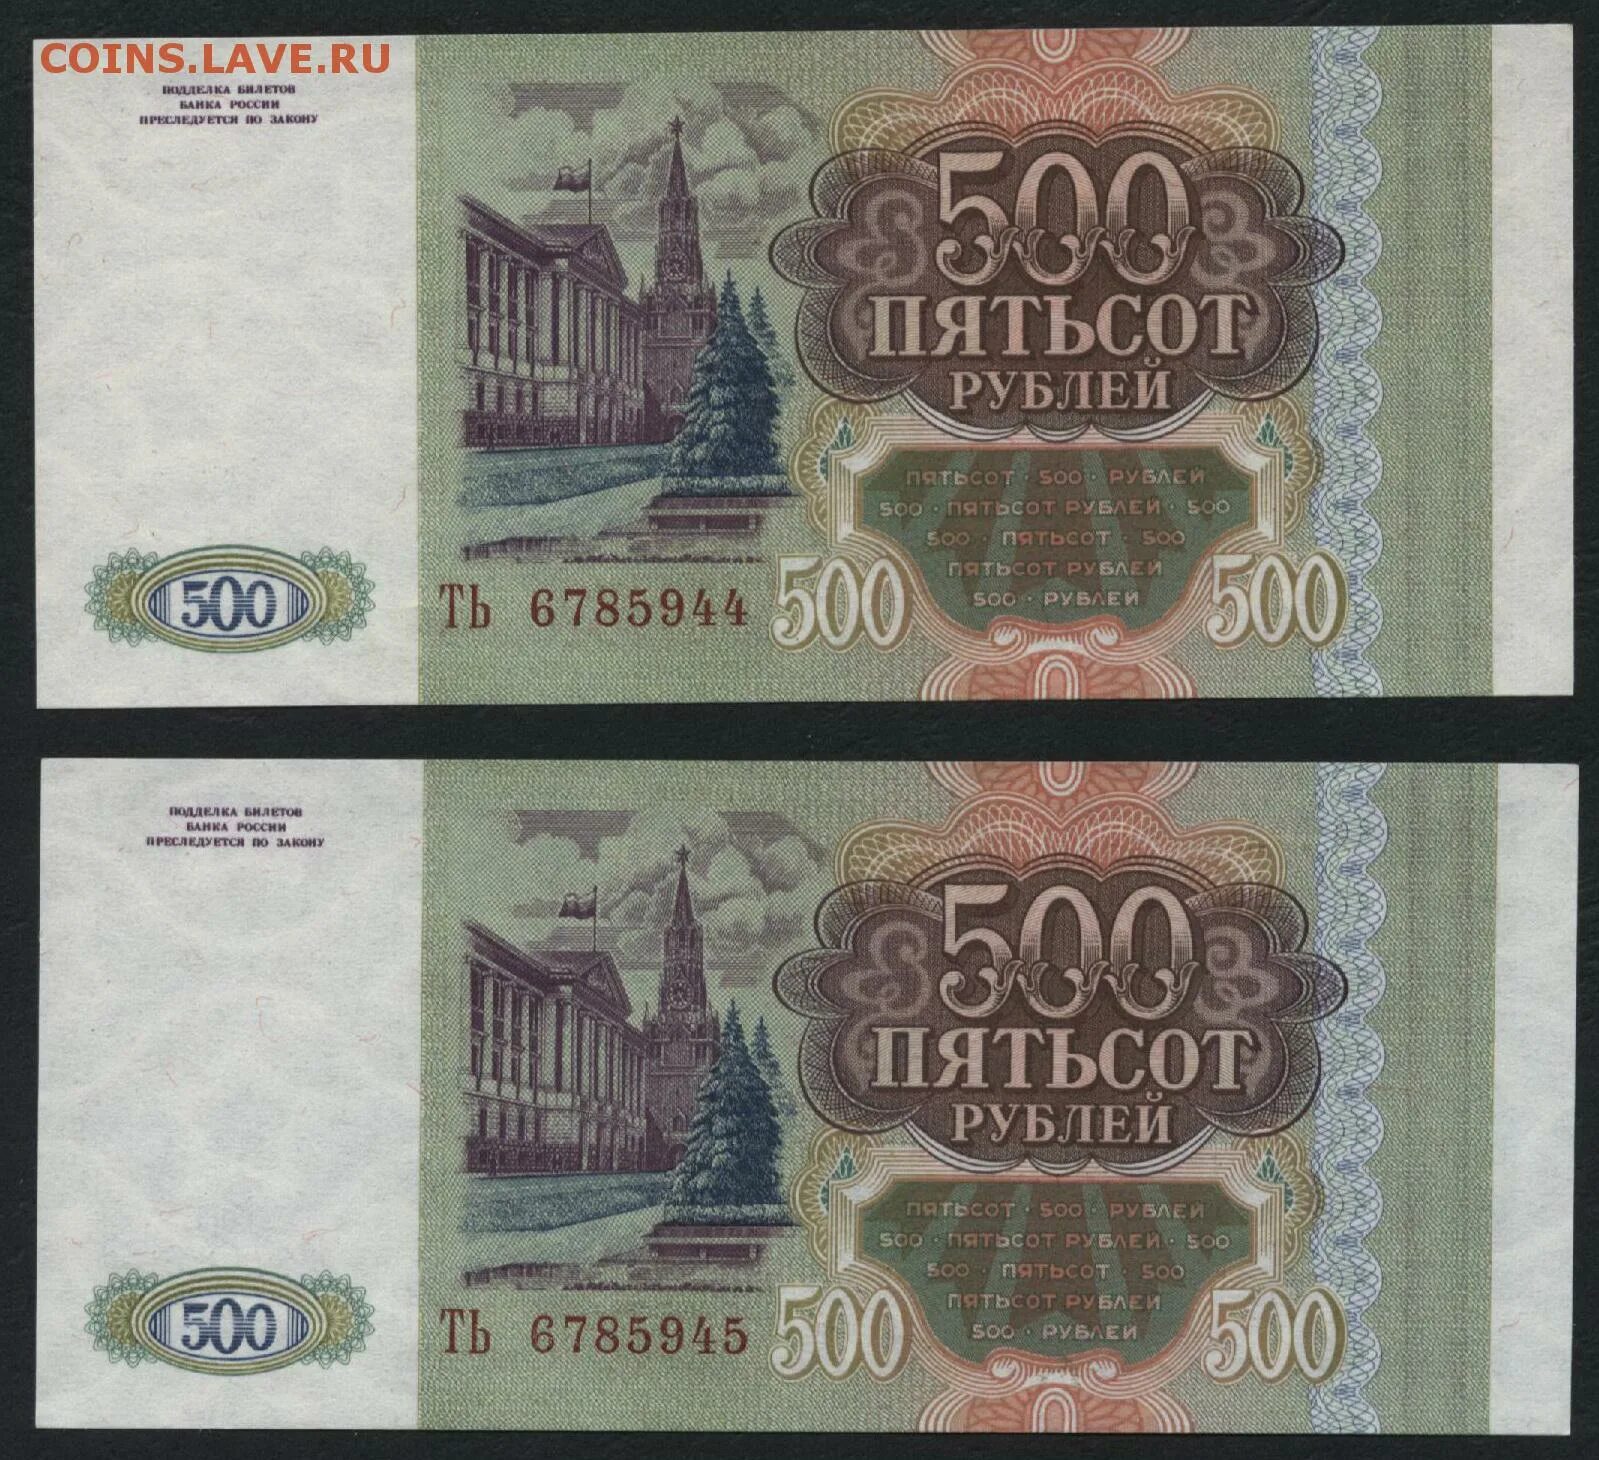 22 500 в рублях. 500 Рублей. 500 Рублей 1993. Пятьсот рублей 1993. 500 Рублей 1993 года.